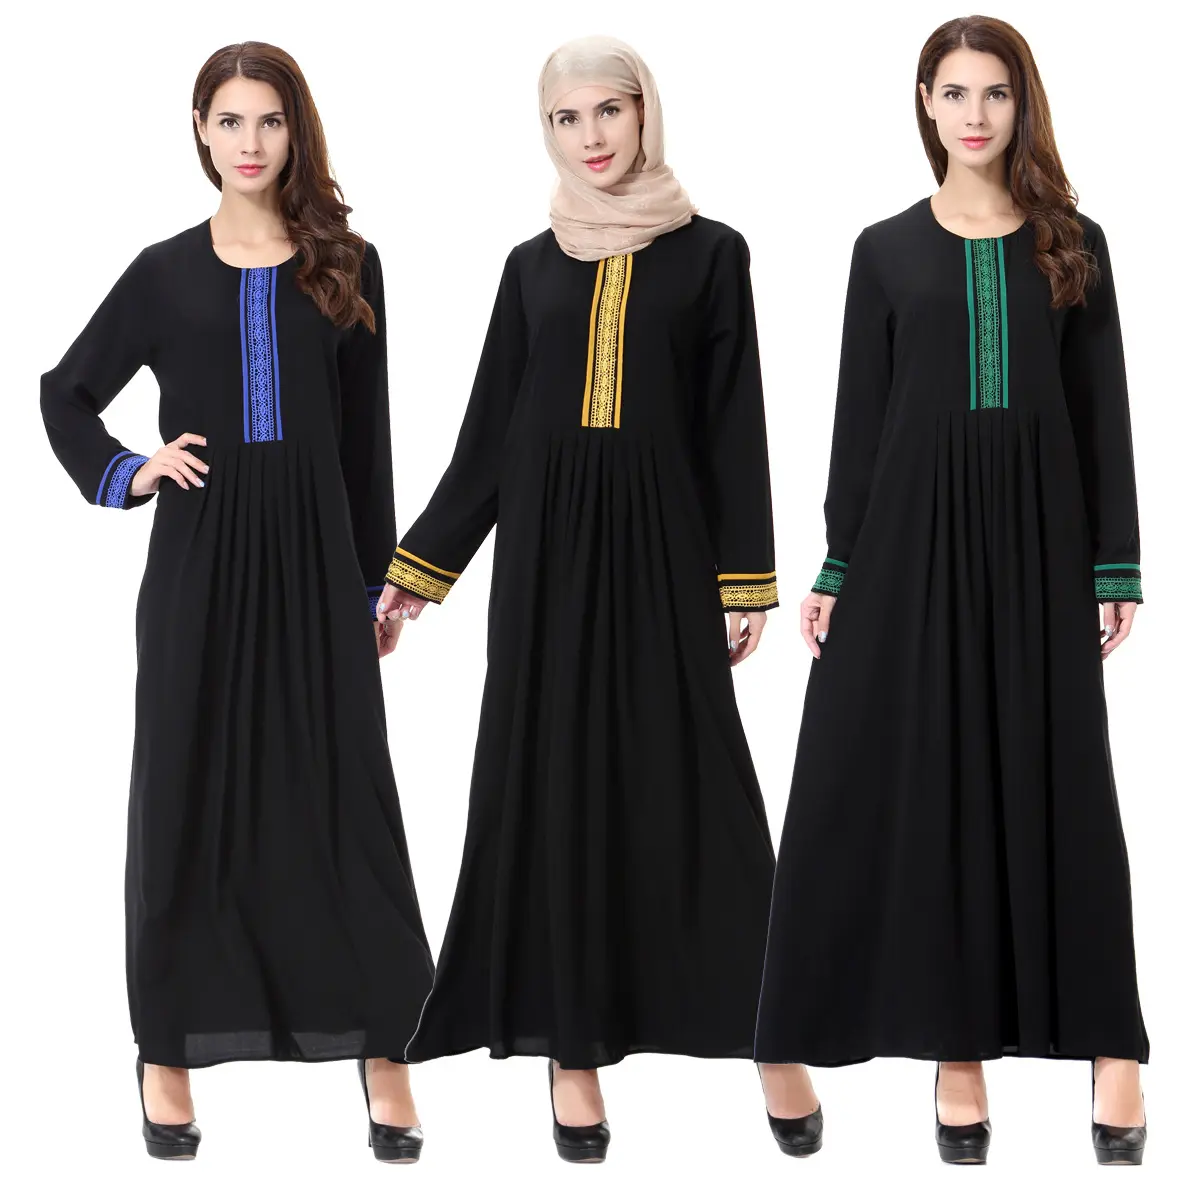 Robe pour femmes musulmanes du Moyen-Orient de luxe de haute qualité légère et respirante nouveau design vente à chaud robe longue robe turque abaya